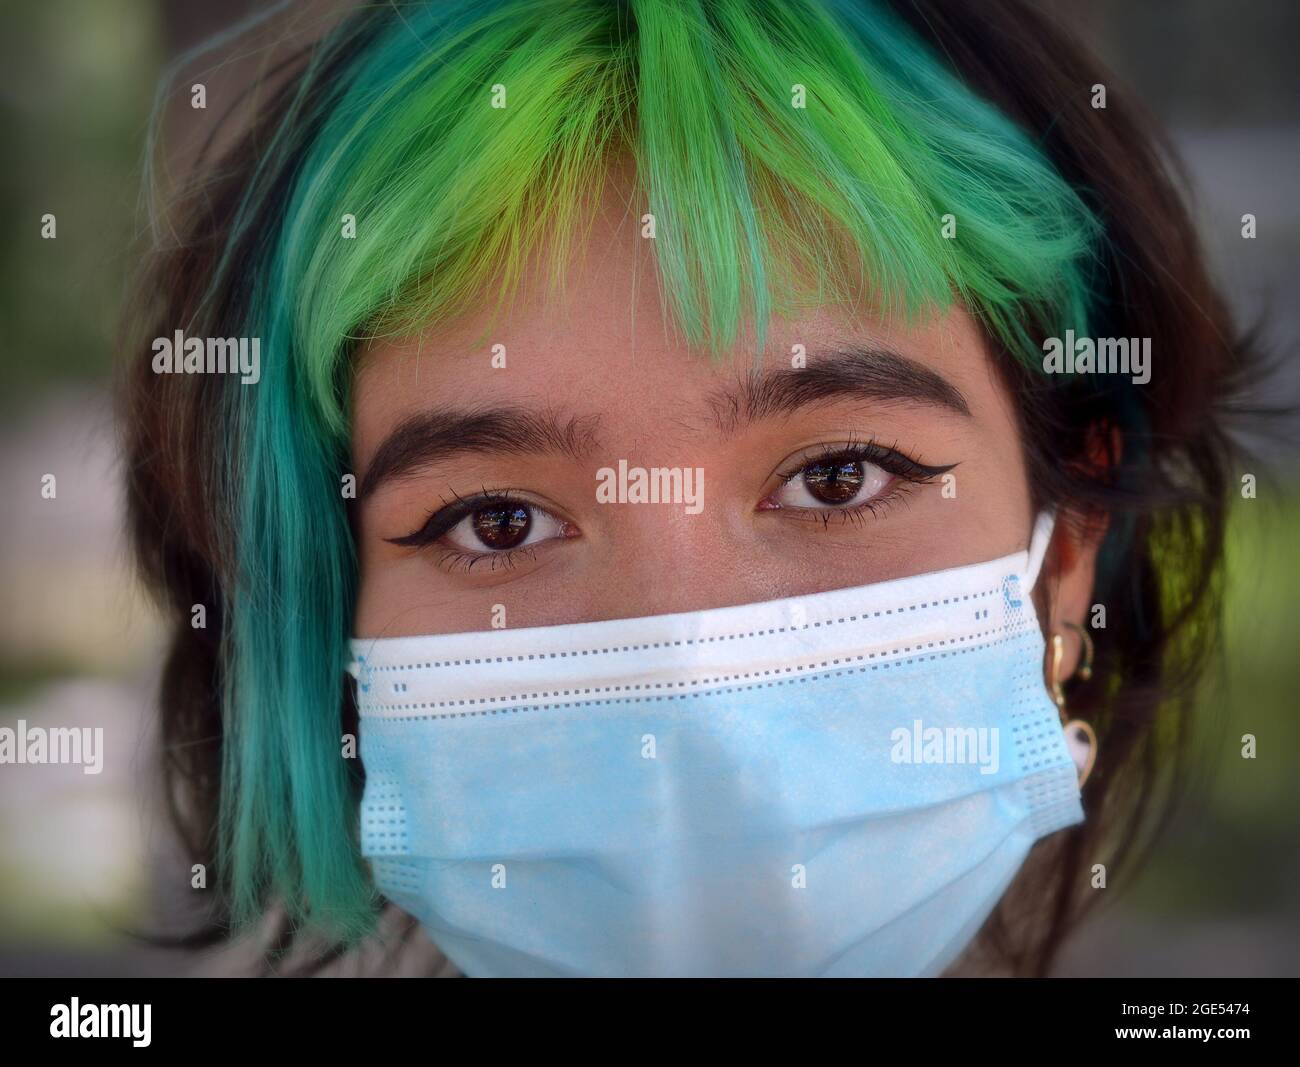 Une jeune fille caucasienne aux yeux bruns et aux cheveux teints en vert et en bleu porte un masque chirurgical bleu clair pendant la pandémie mondiale du coronavirus. Banque D'Images